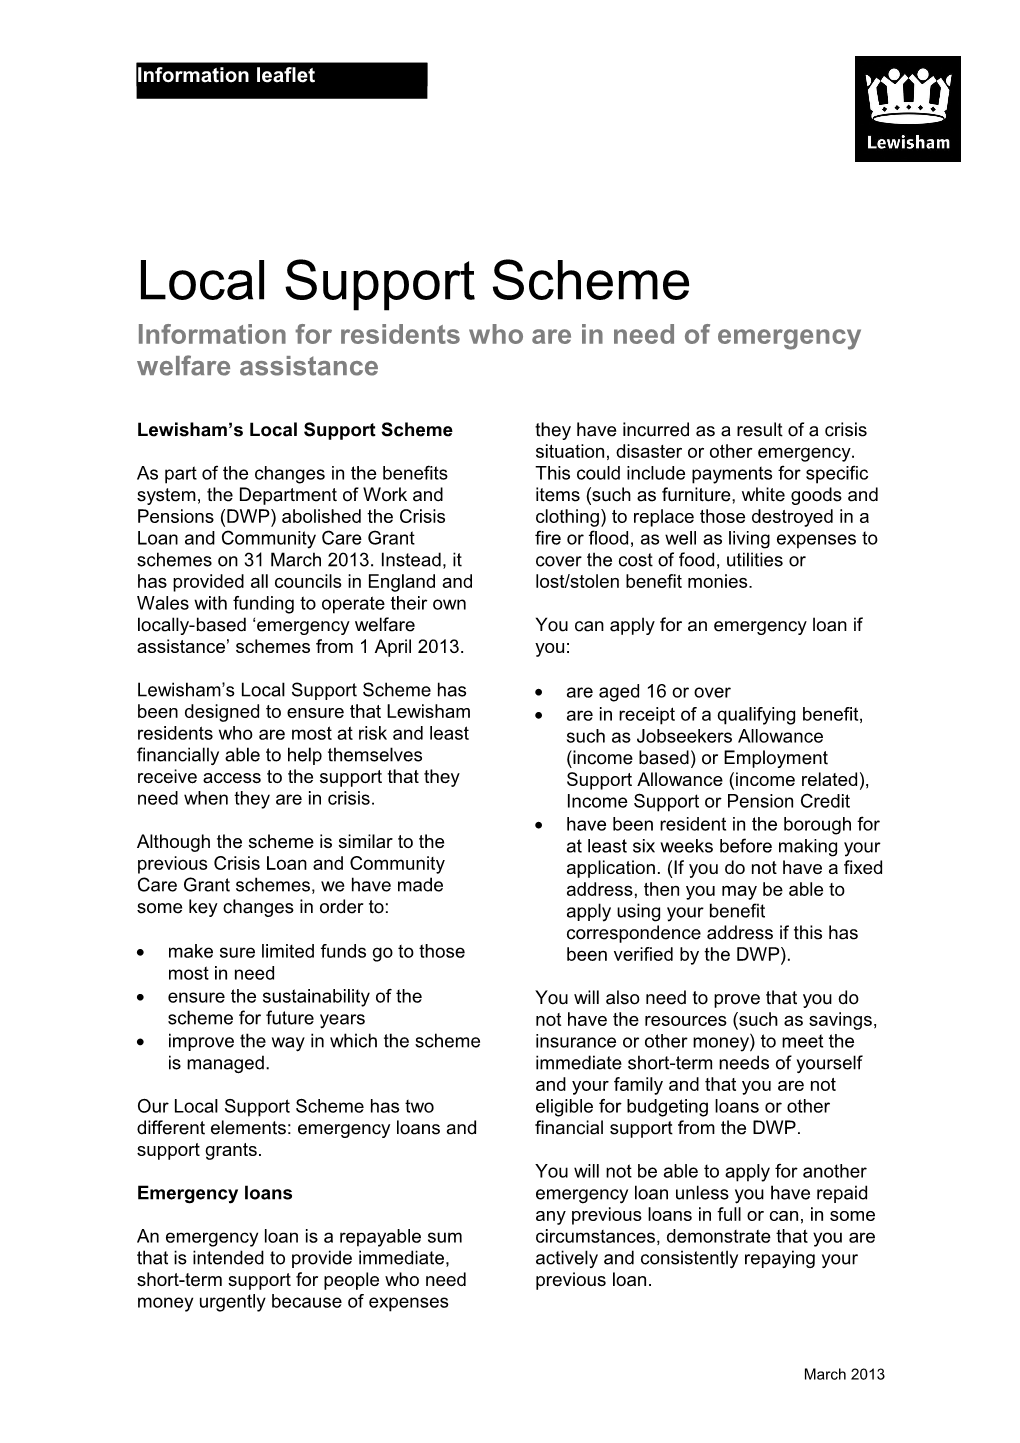 Local Support Scheme Information Factsheet